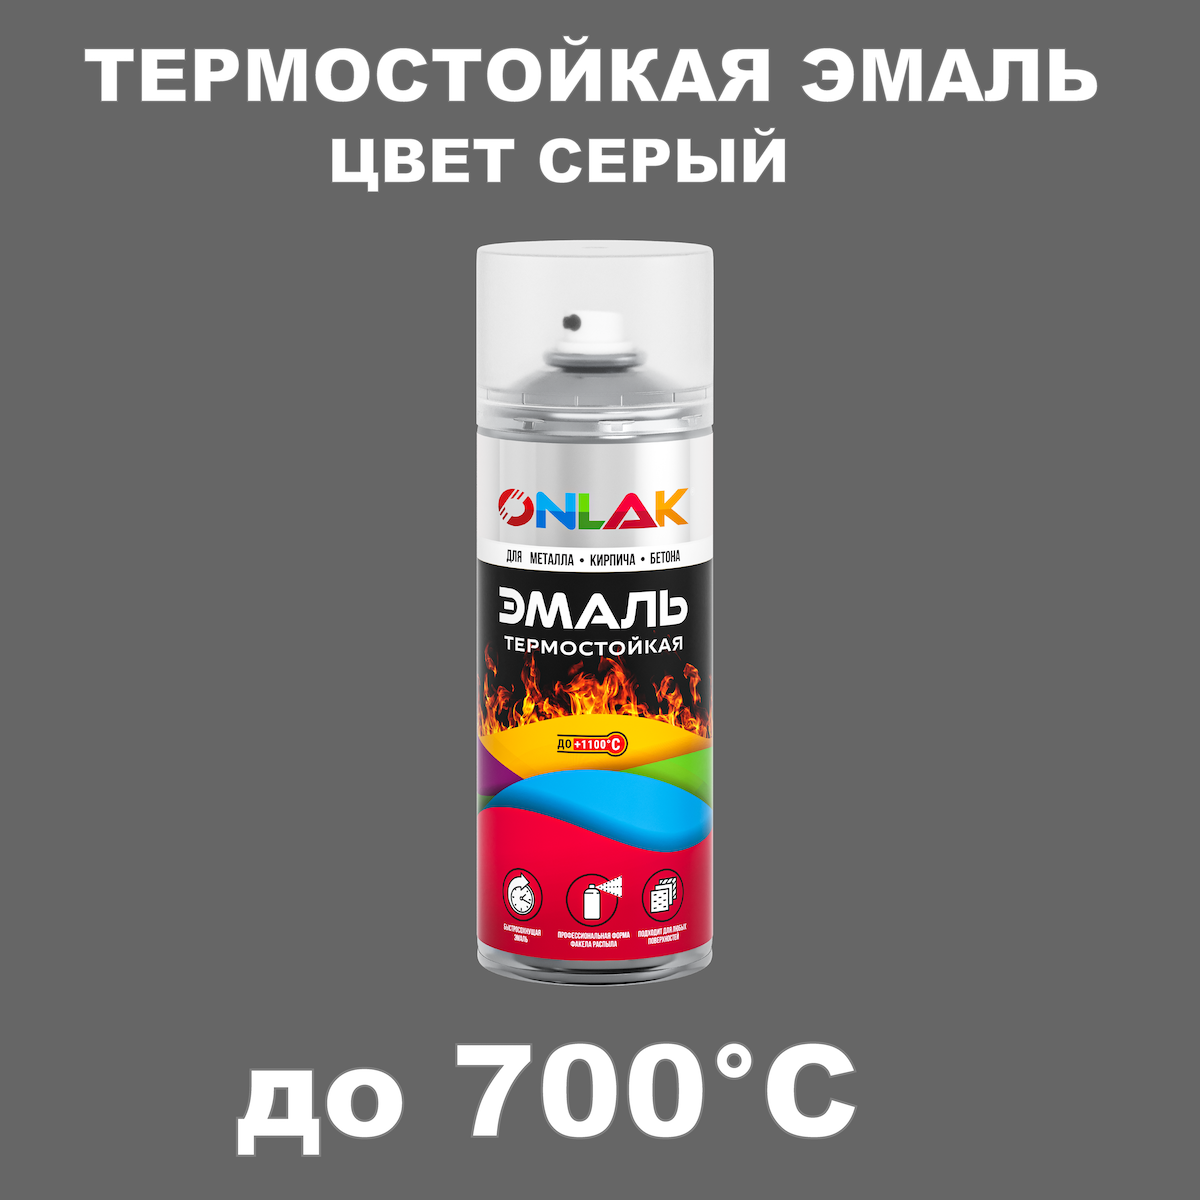 Аэрозольная термостойкая эмаль ONLAK, цвет серый